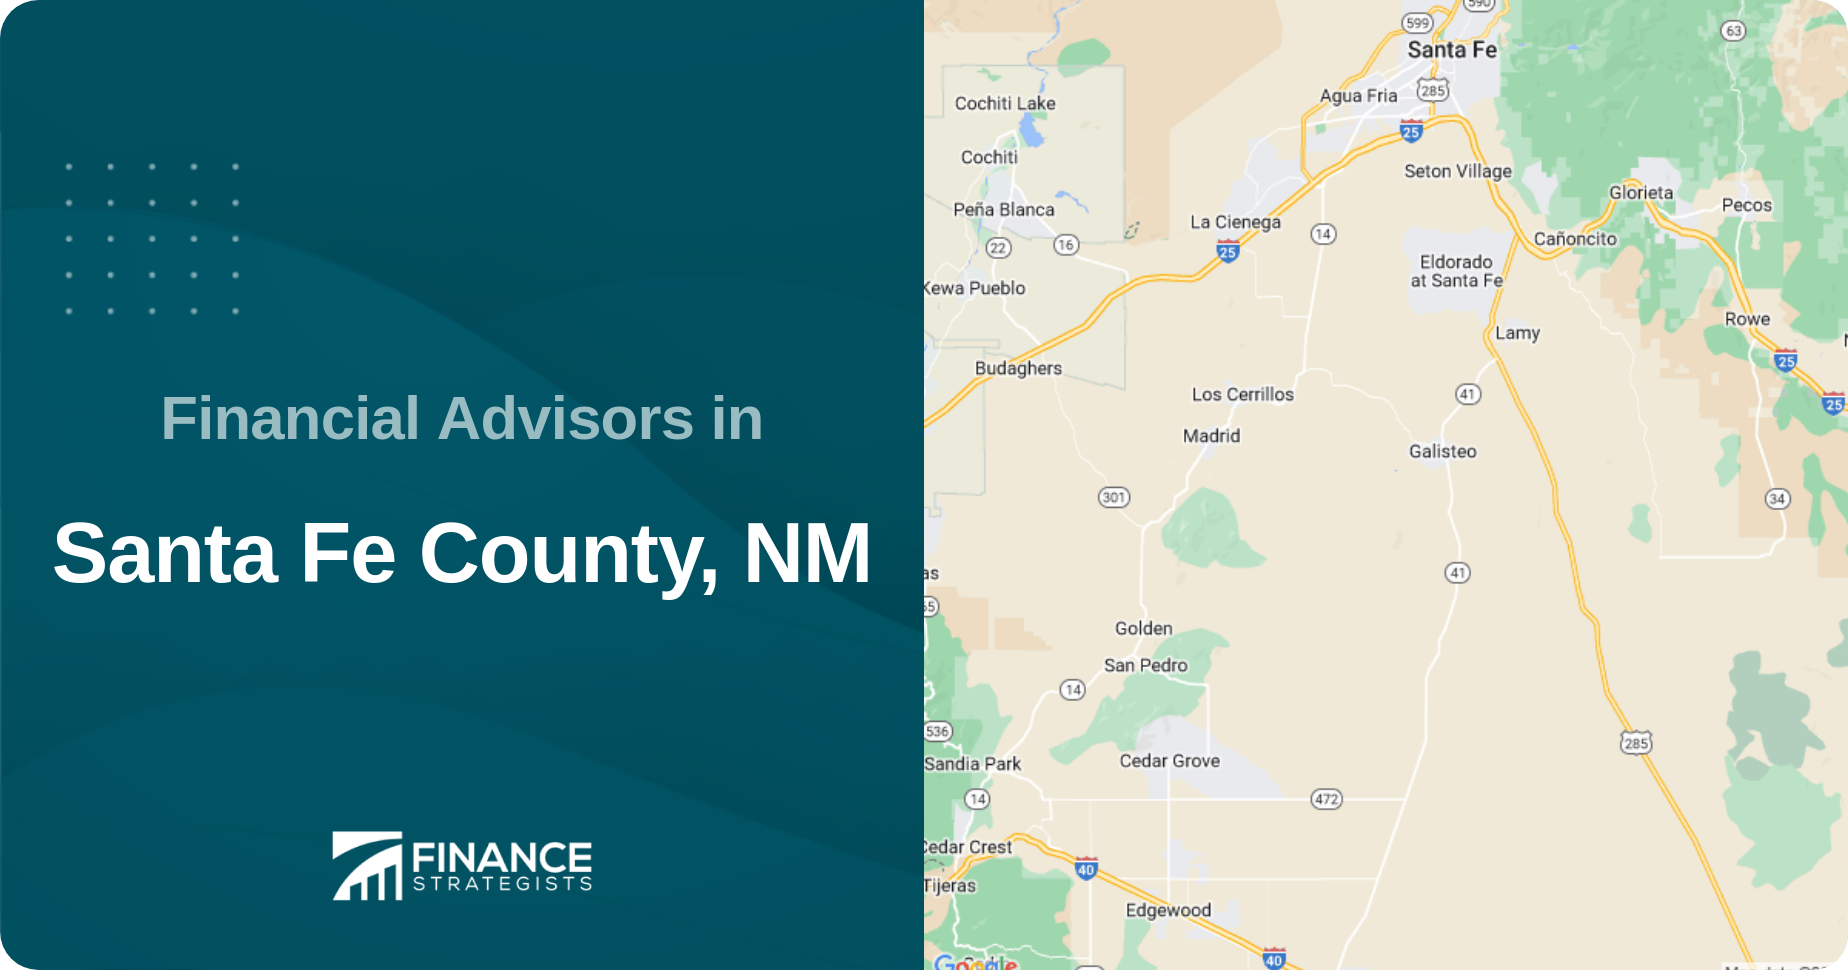 Financial Advisors in Santa Fe County, NM